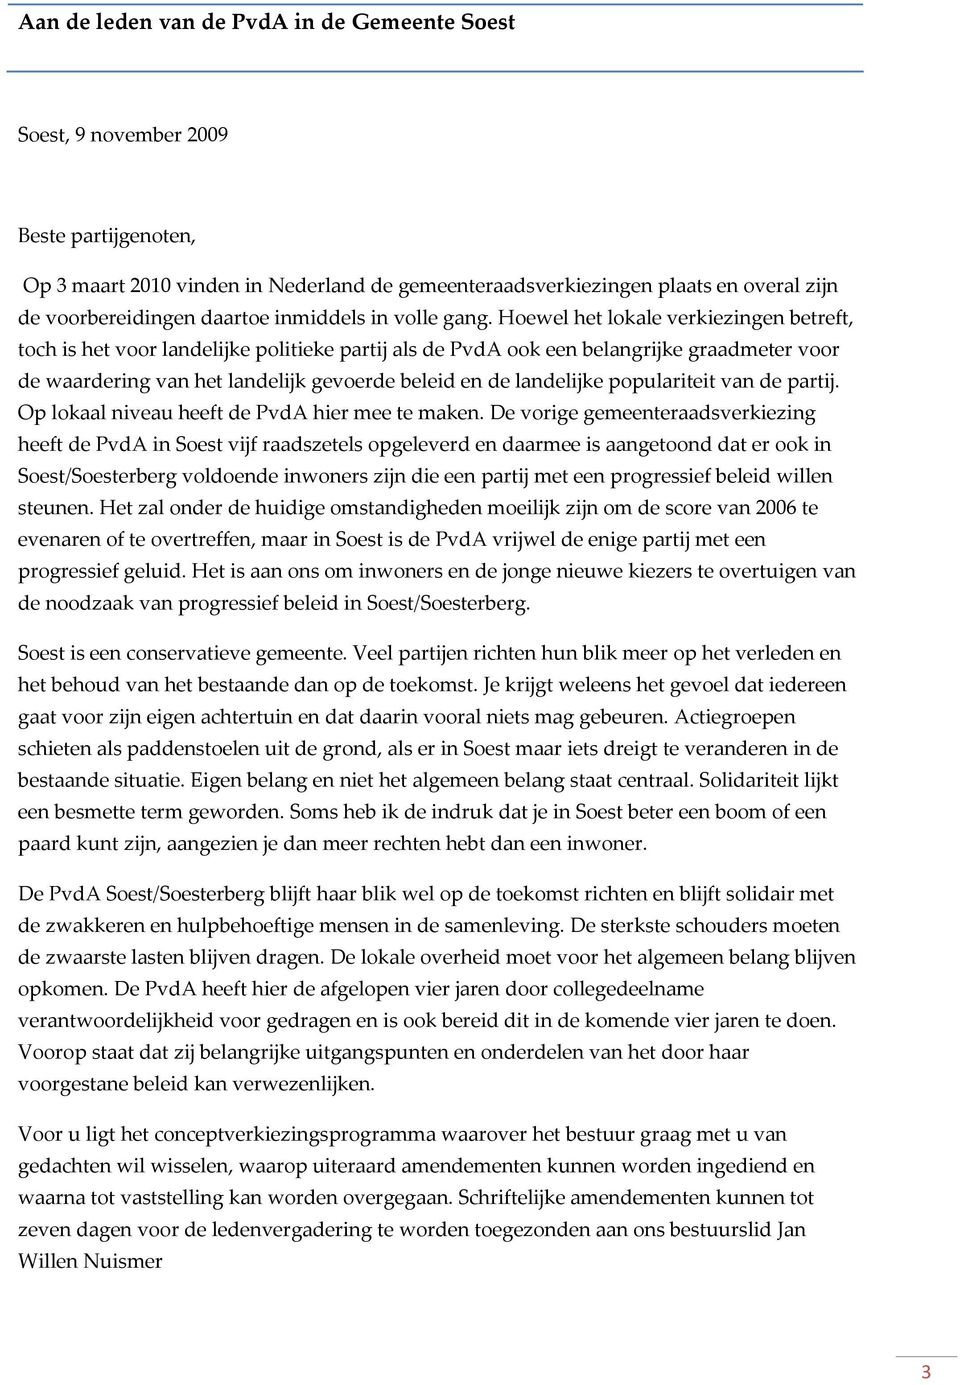 Hoewel het lokale verkiezingen betreft, toch is het voor landelijke politieke partij als de PvdA ook een belangrijke graadmeter voor de waardering van het landelijk gevoerde beleid en de landelijke